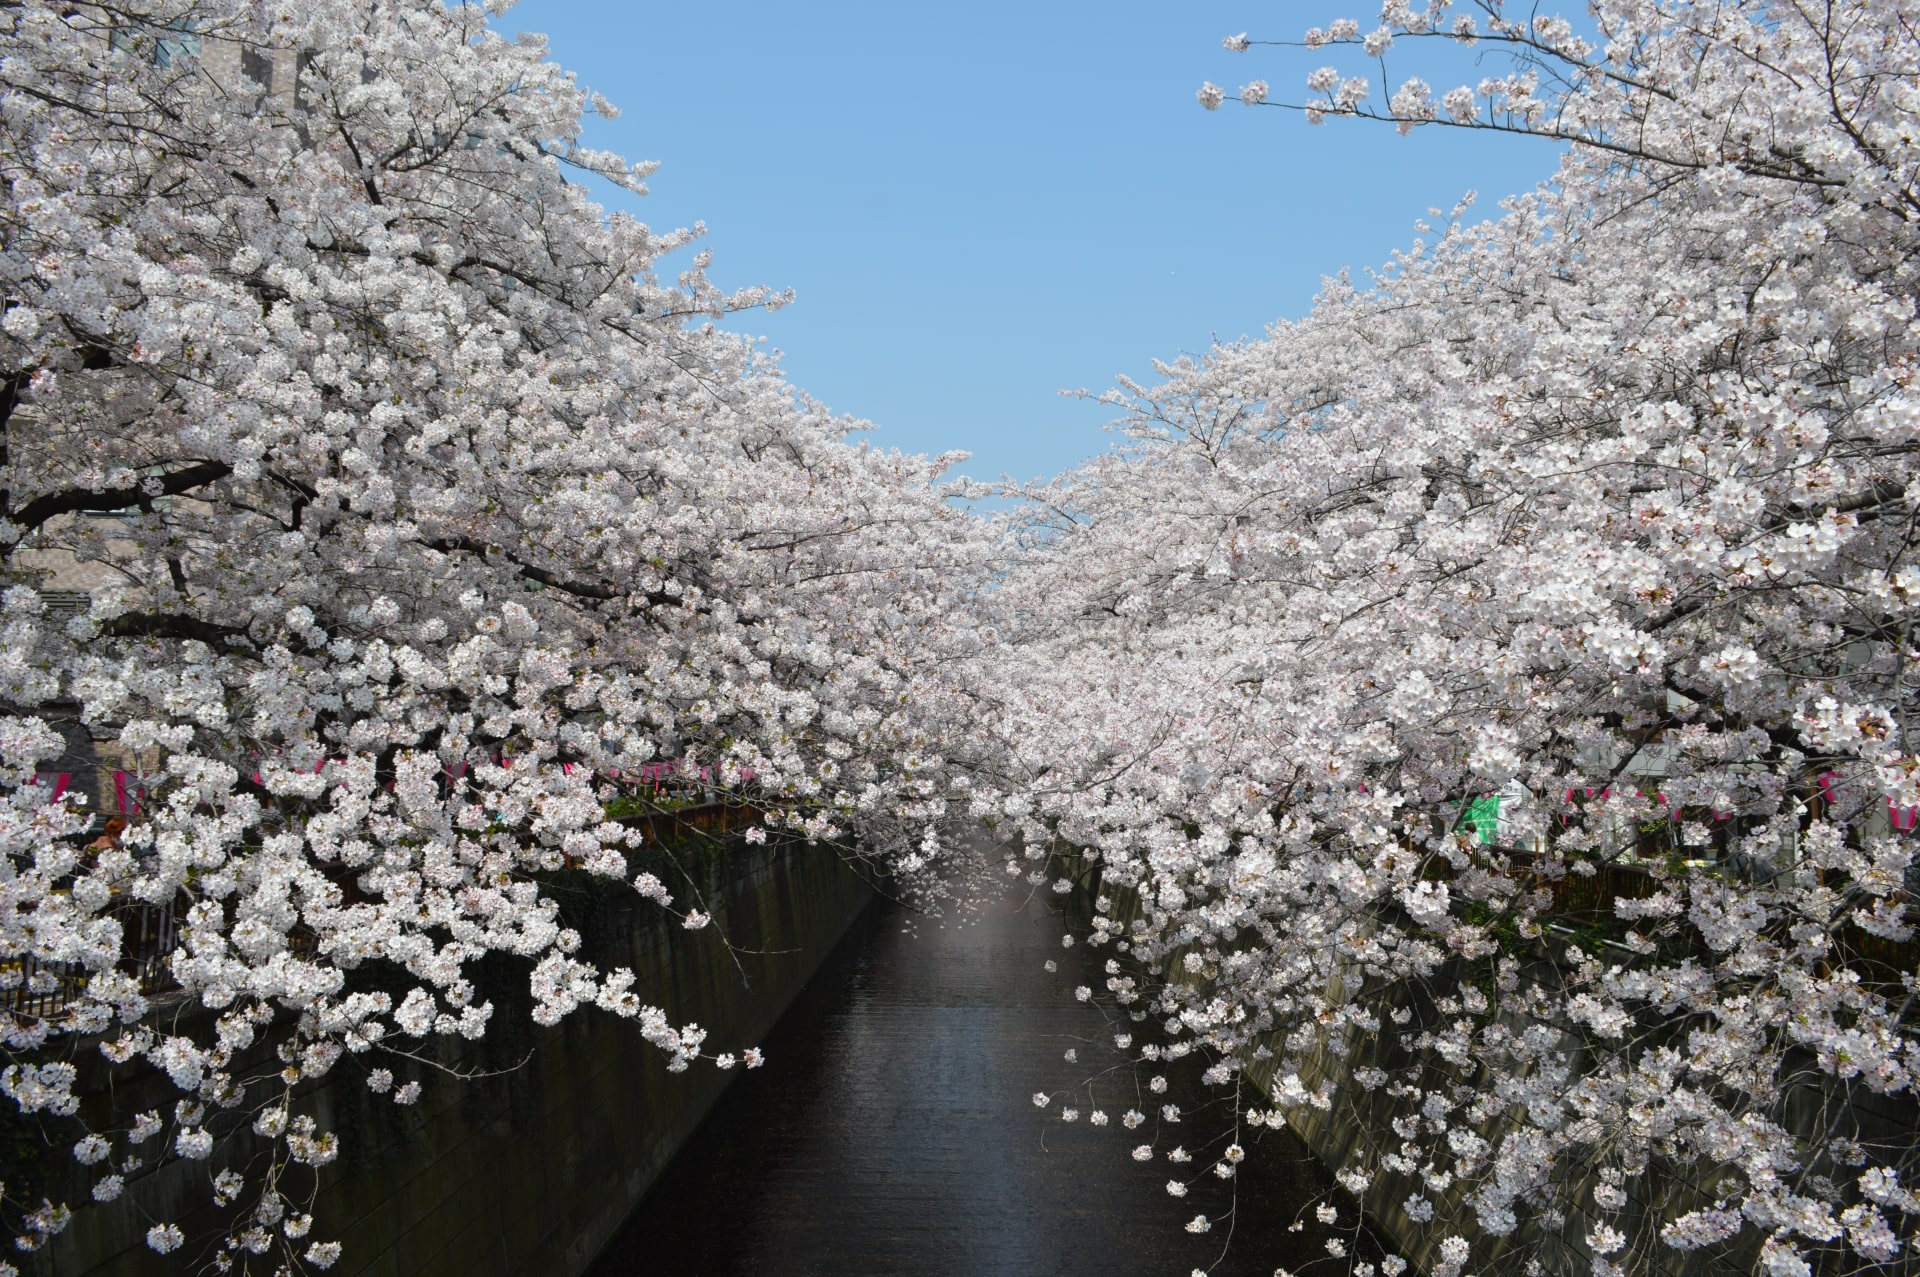 Nakameguro Cherry Blossom Festival